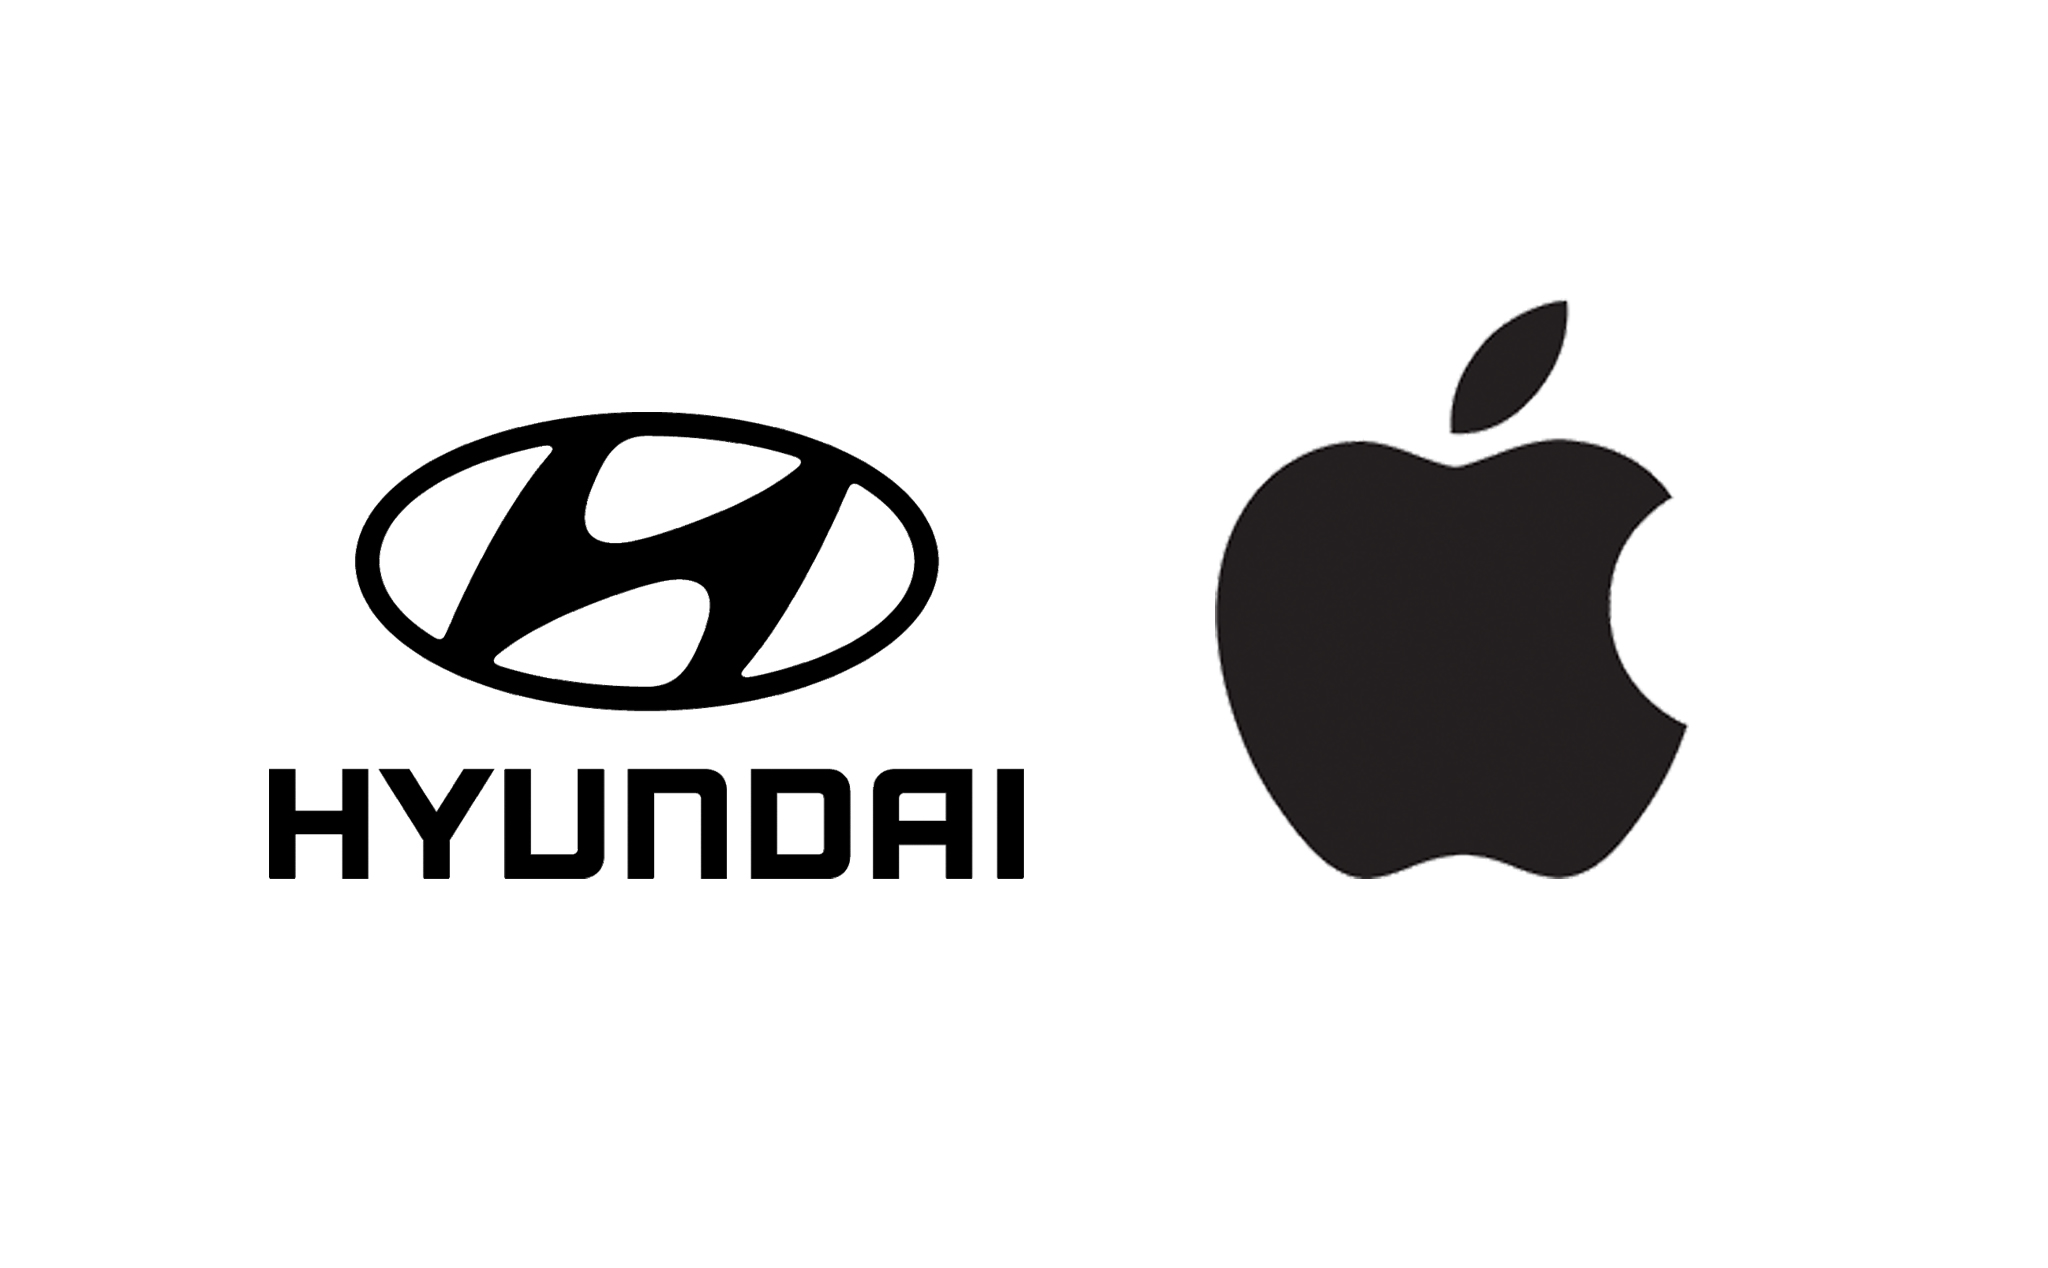 Hyundai đã phải xoá các bài đăng về chuyện hợp tác với Apple làm xe điện